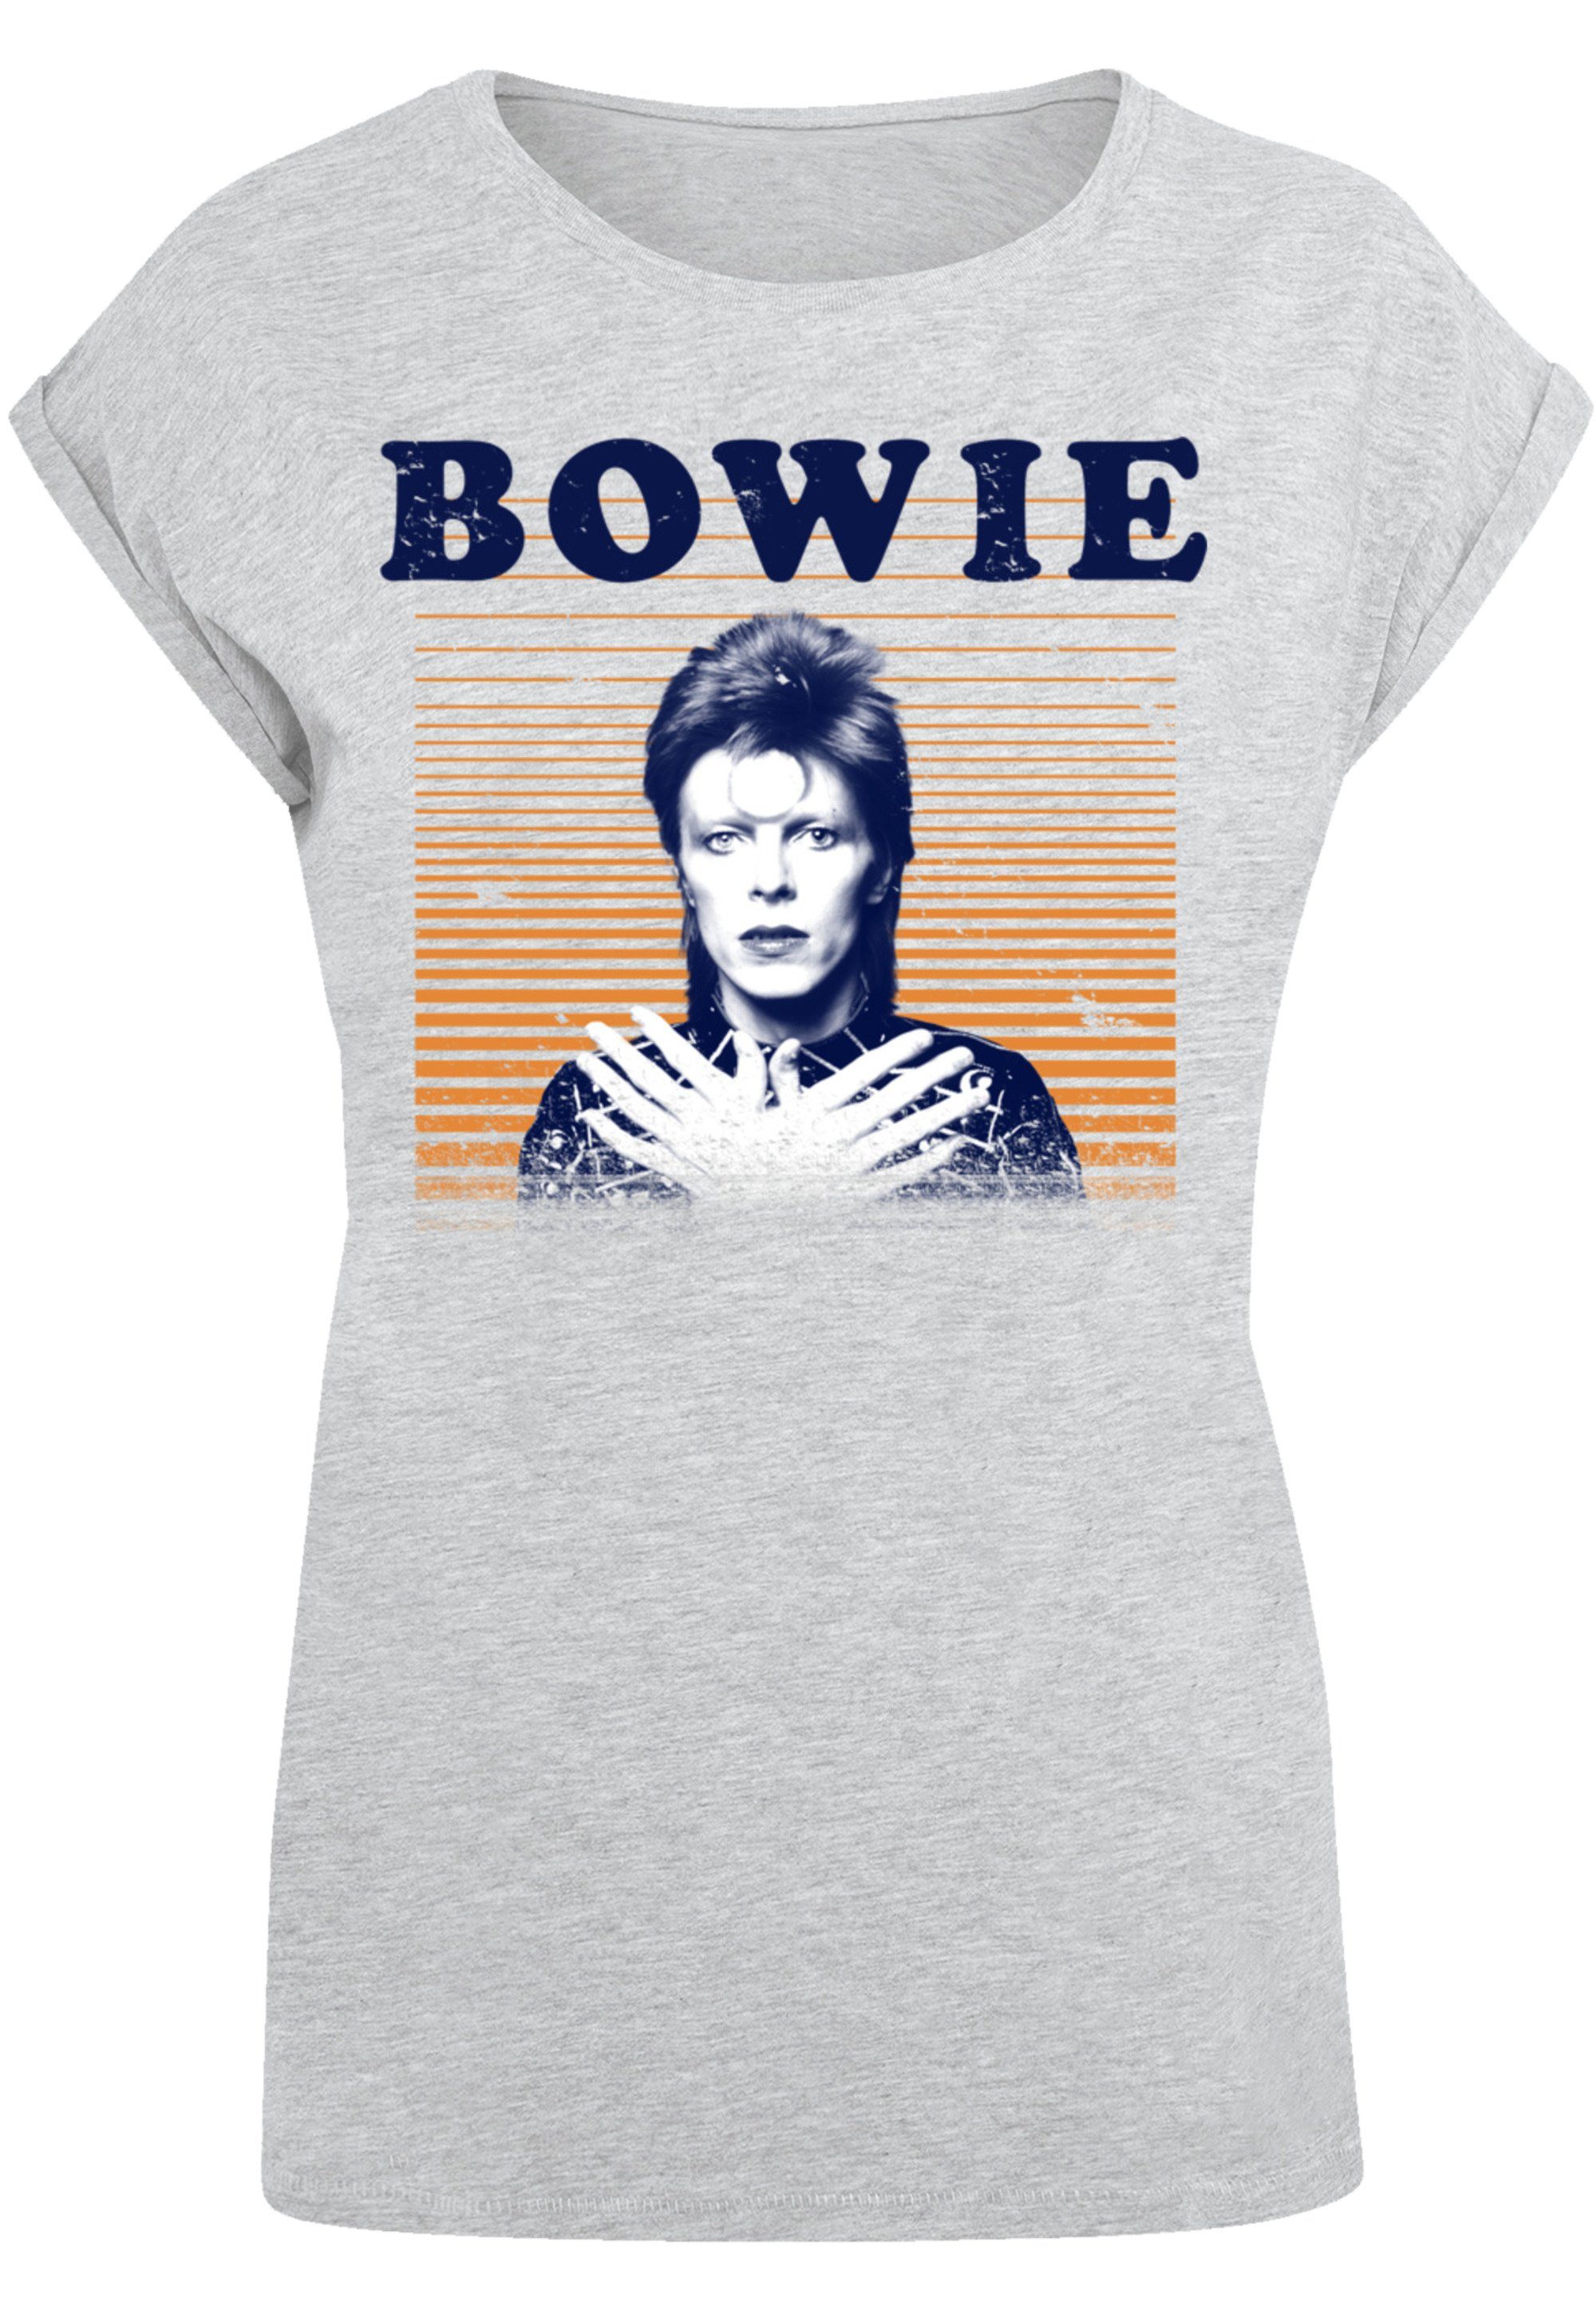 cm Model 170 trägt Das Bowie Größe T-Shirt Print, ist F4NT4STIC Orange groß Stripes und M David